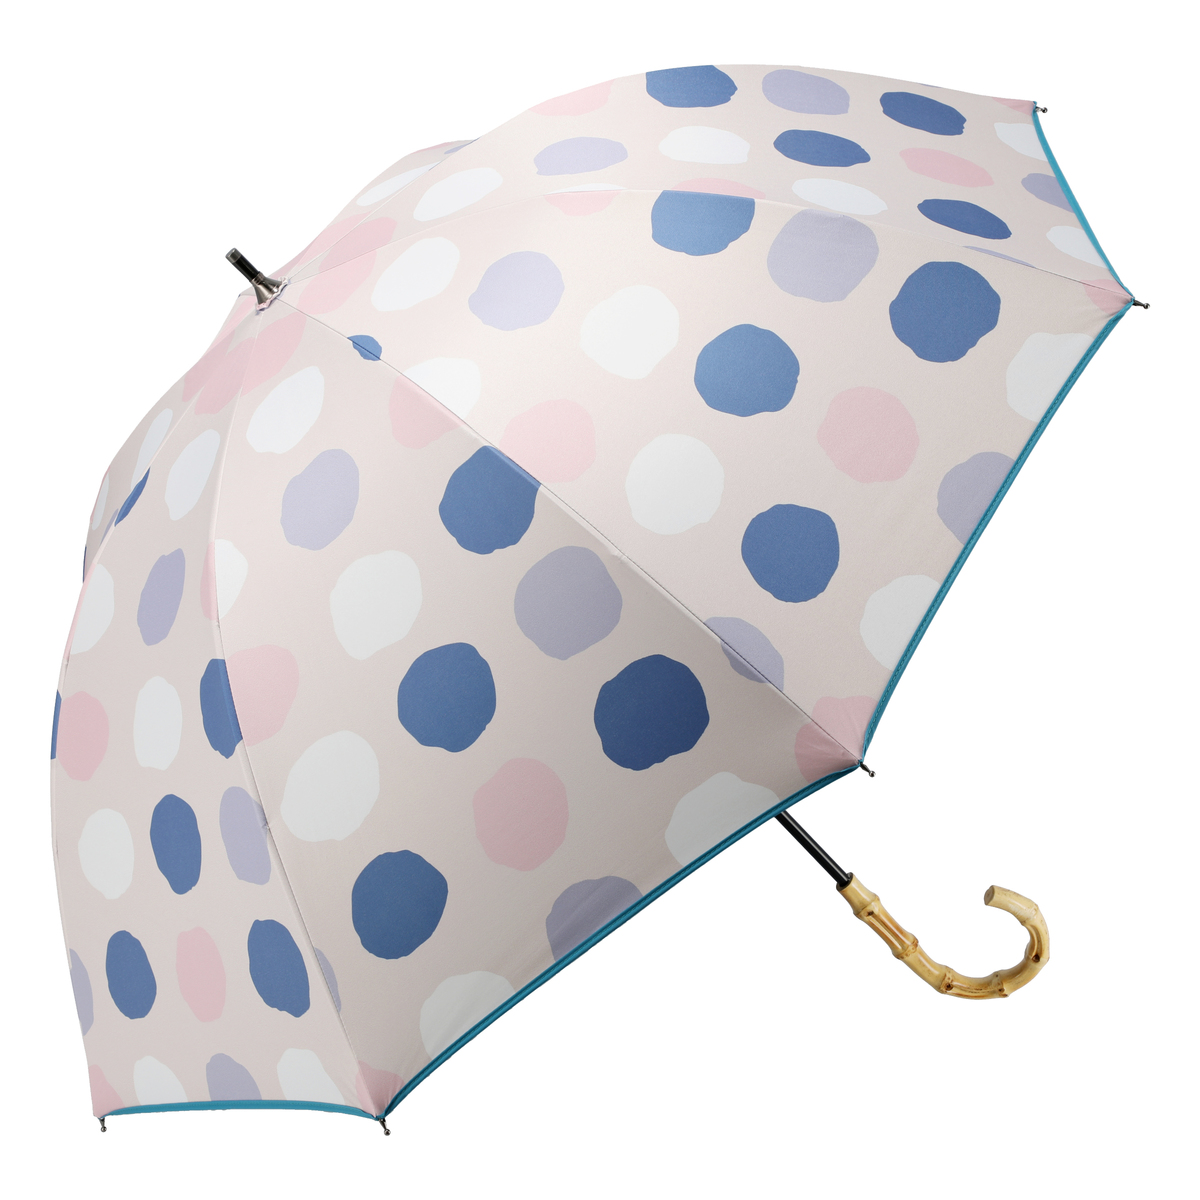  ルナジュメール UV+1級遮光+晴雨兼用 水玉ショート傘  ピンク